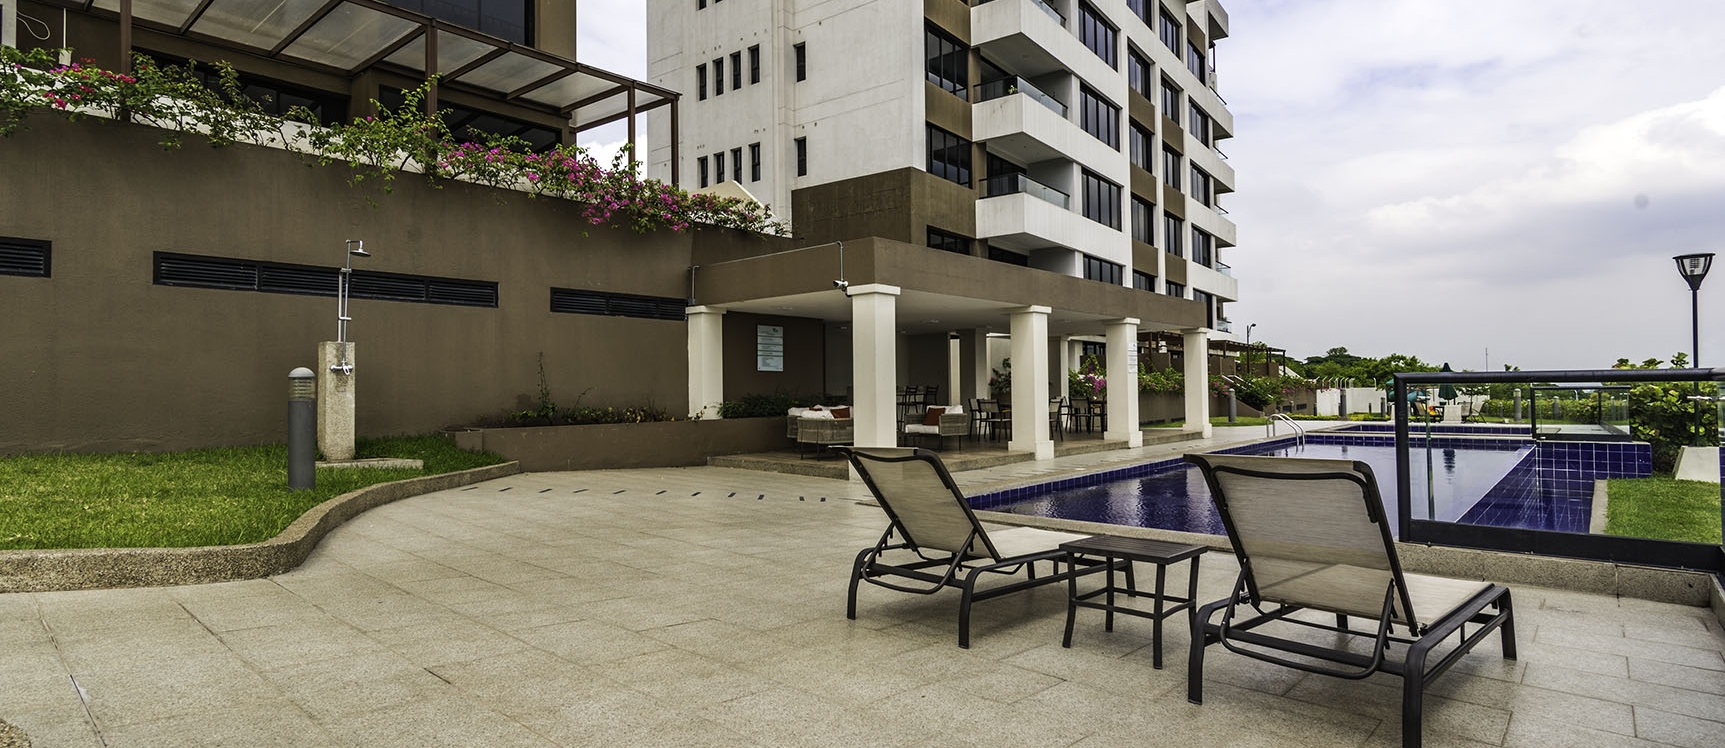 GeoBienes - Departamento amoblado en alquiler ubicado en Bosques de la Costa, Vía a la Costa - Plusvalia Guayaquil Casas de venta y alquiler Inmobiliaria Ecuador